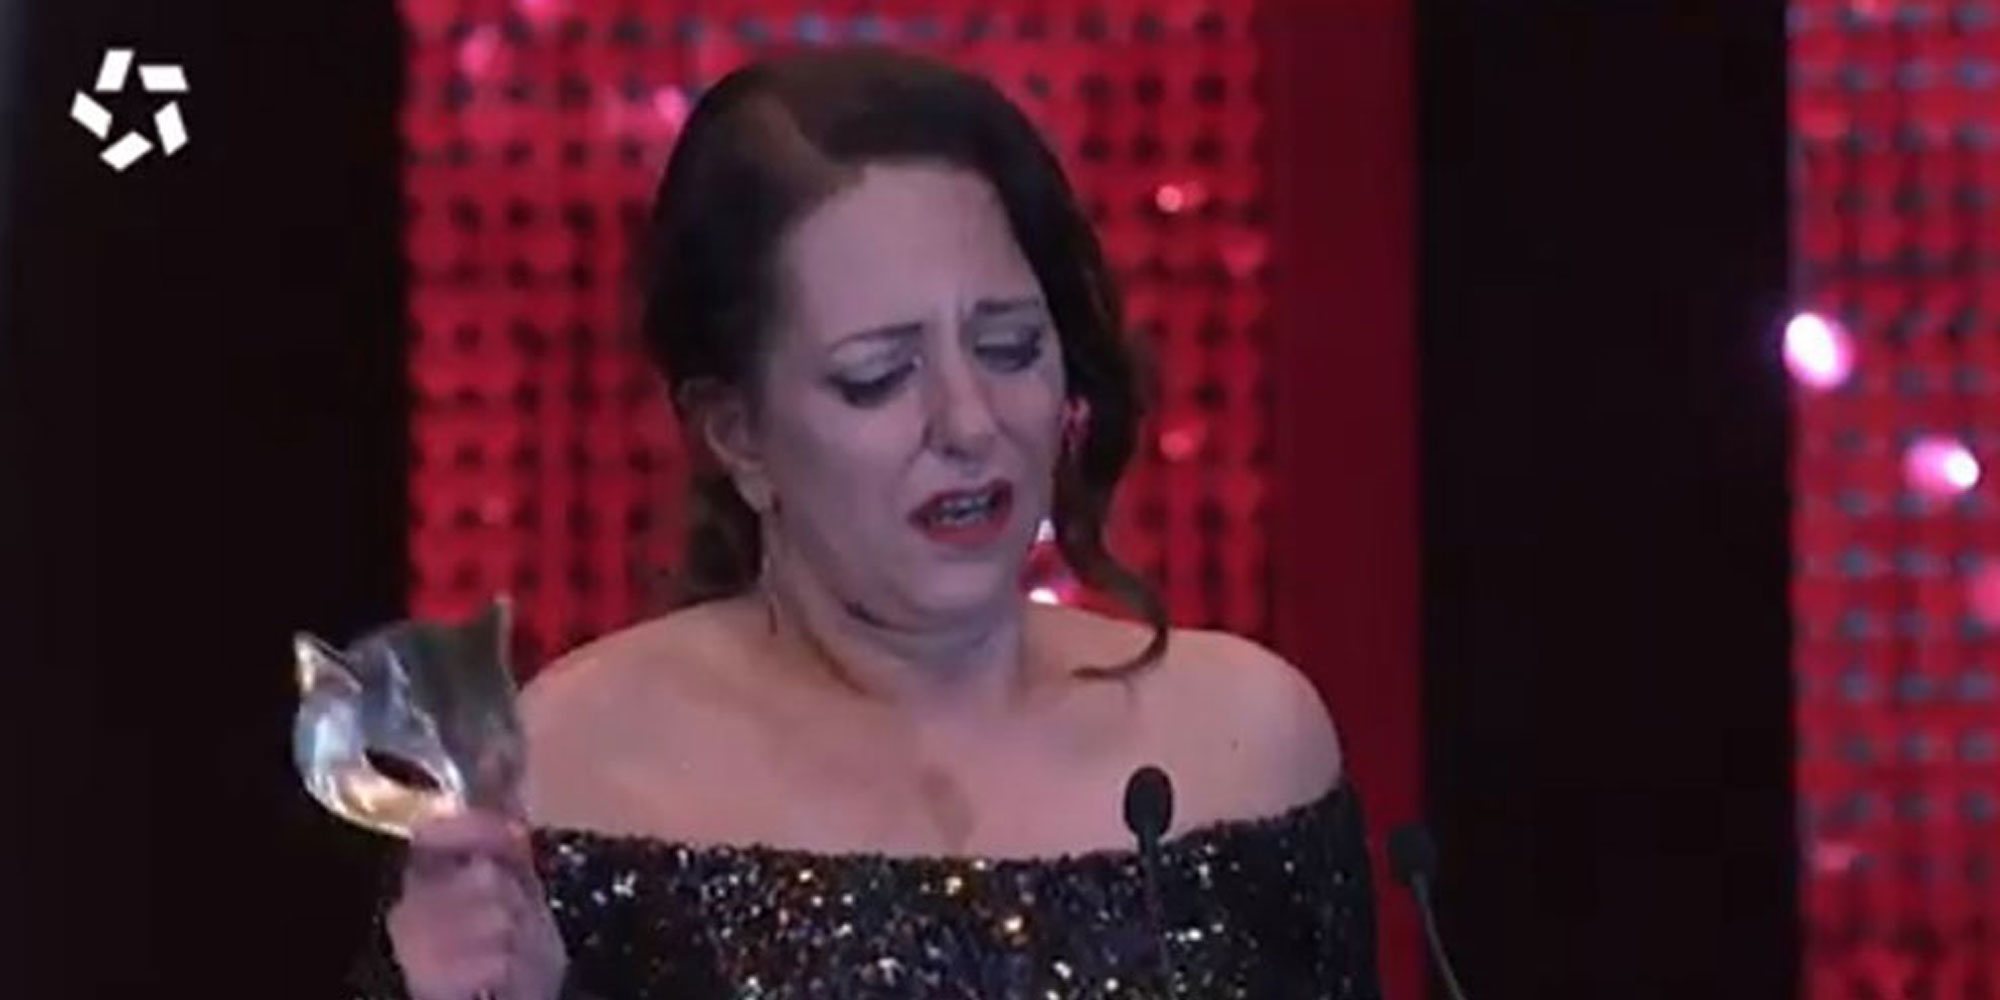 La emoción de Yolanda Ramos tras ganar un premio Feroz 2020: "Ser cómica mujer es muy difícil"